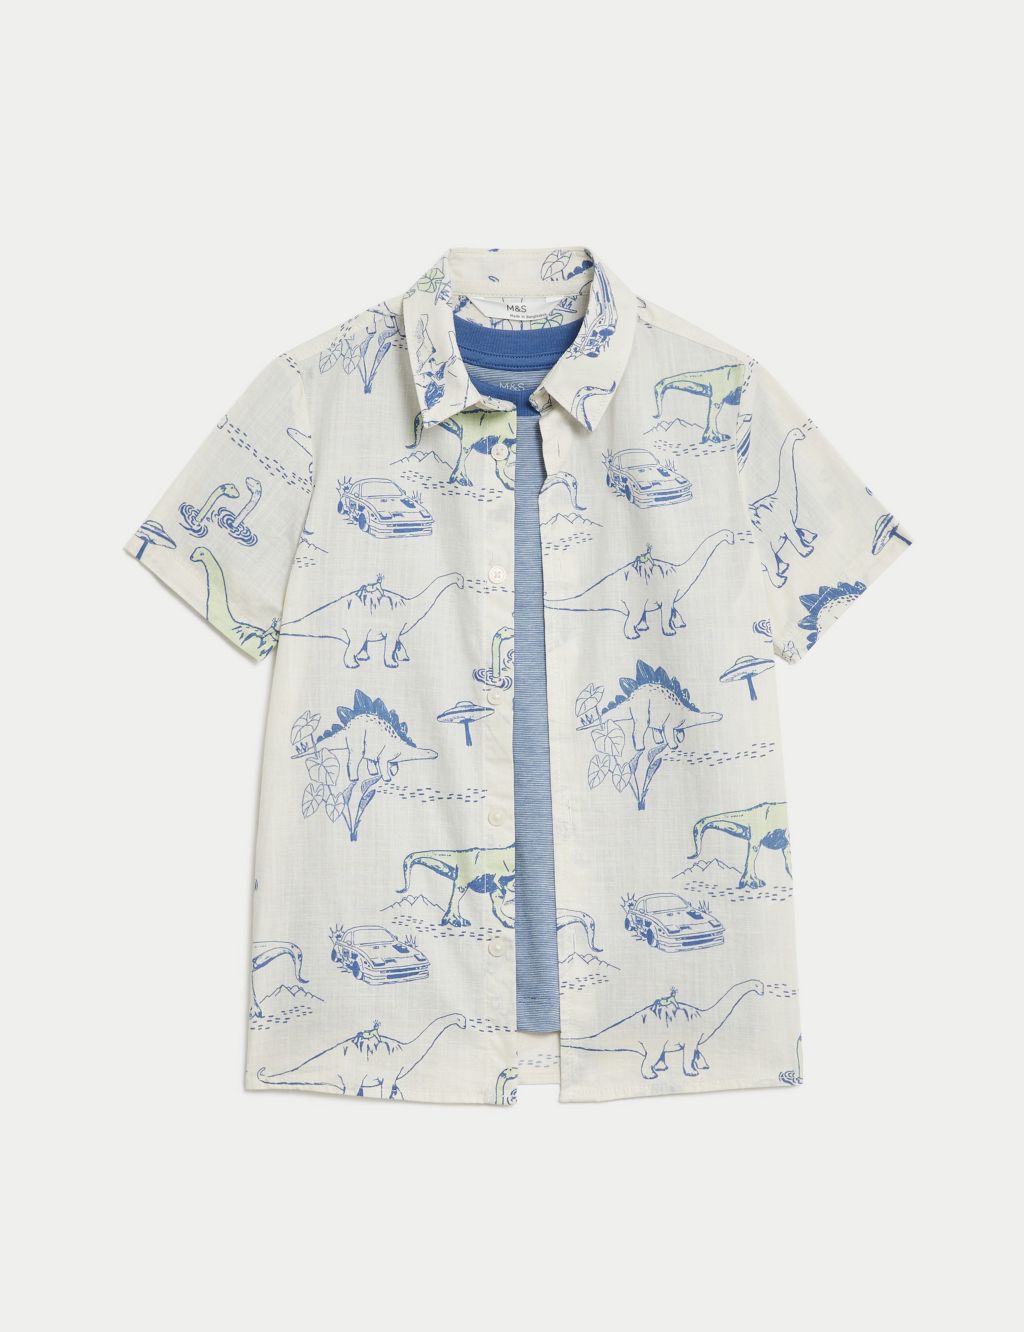 Pure Cotton Dinosaur Shirt & T-Shirt Set (2-8 Yrs)